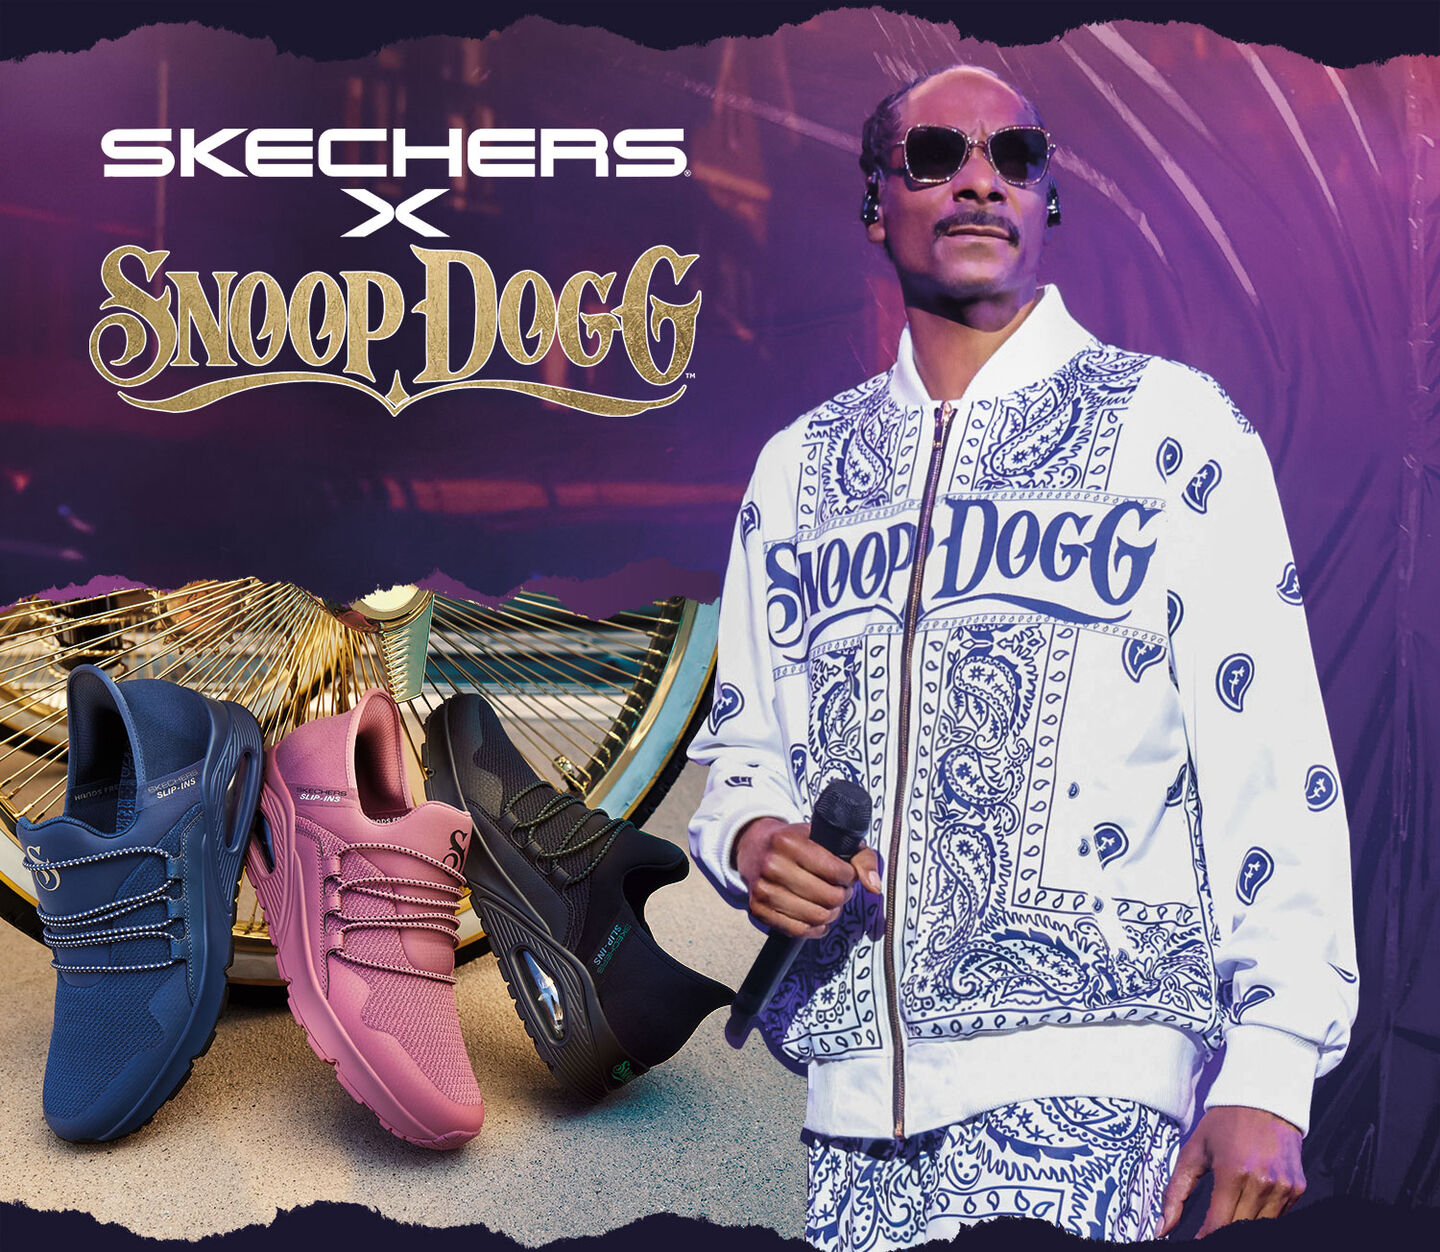 Skechers x Snoop Dogg